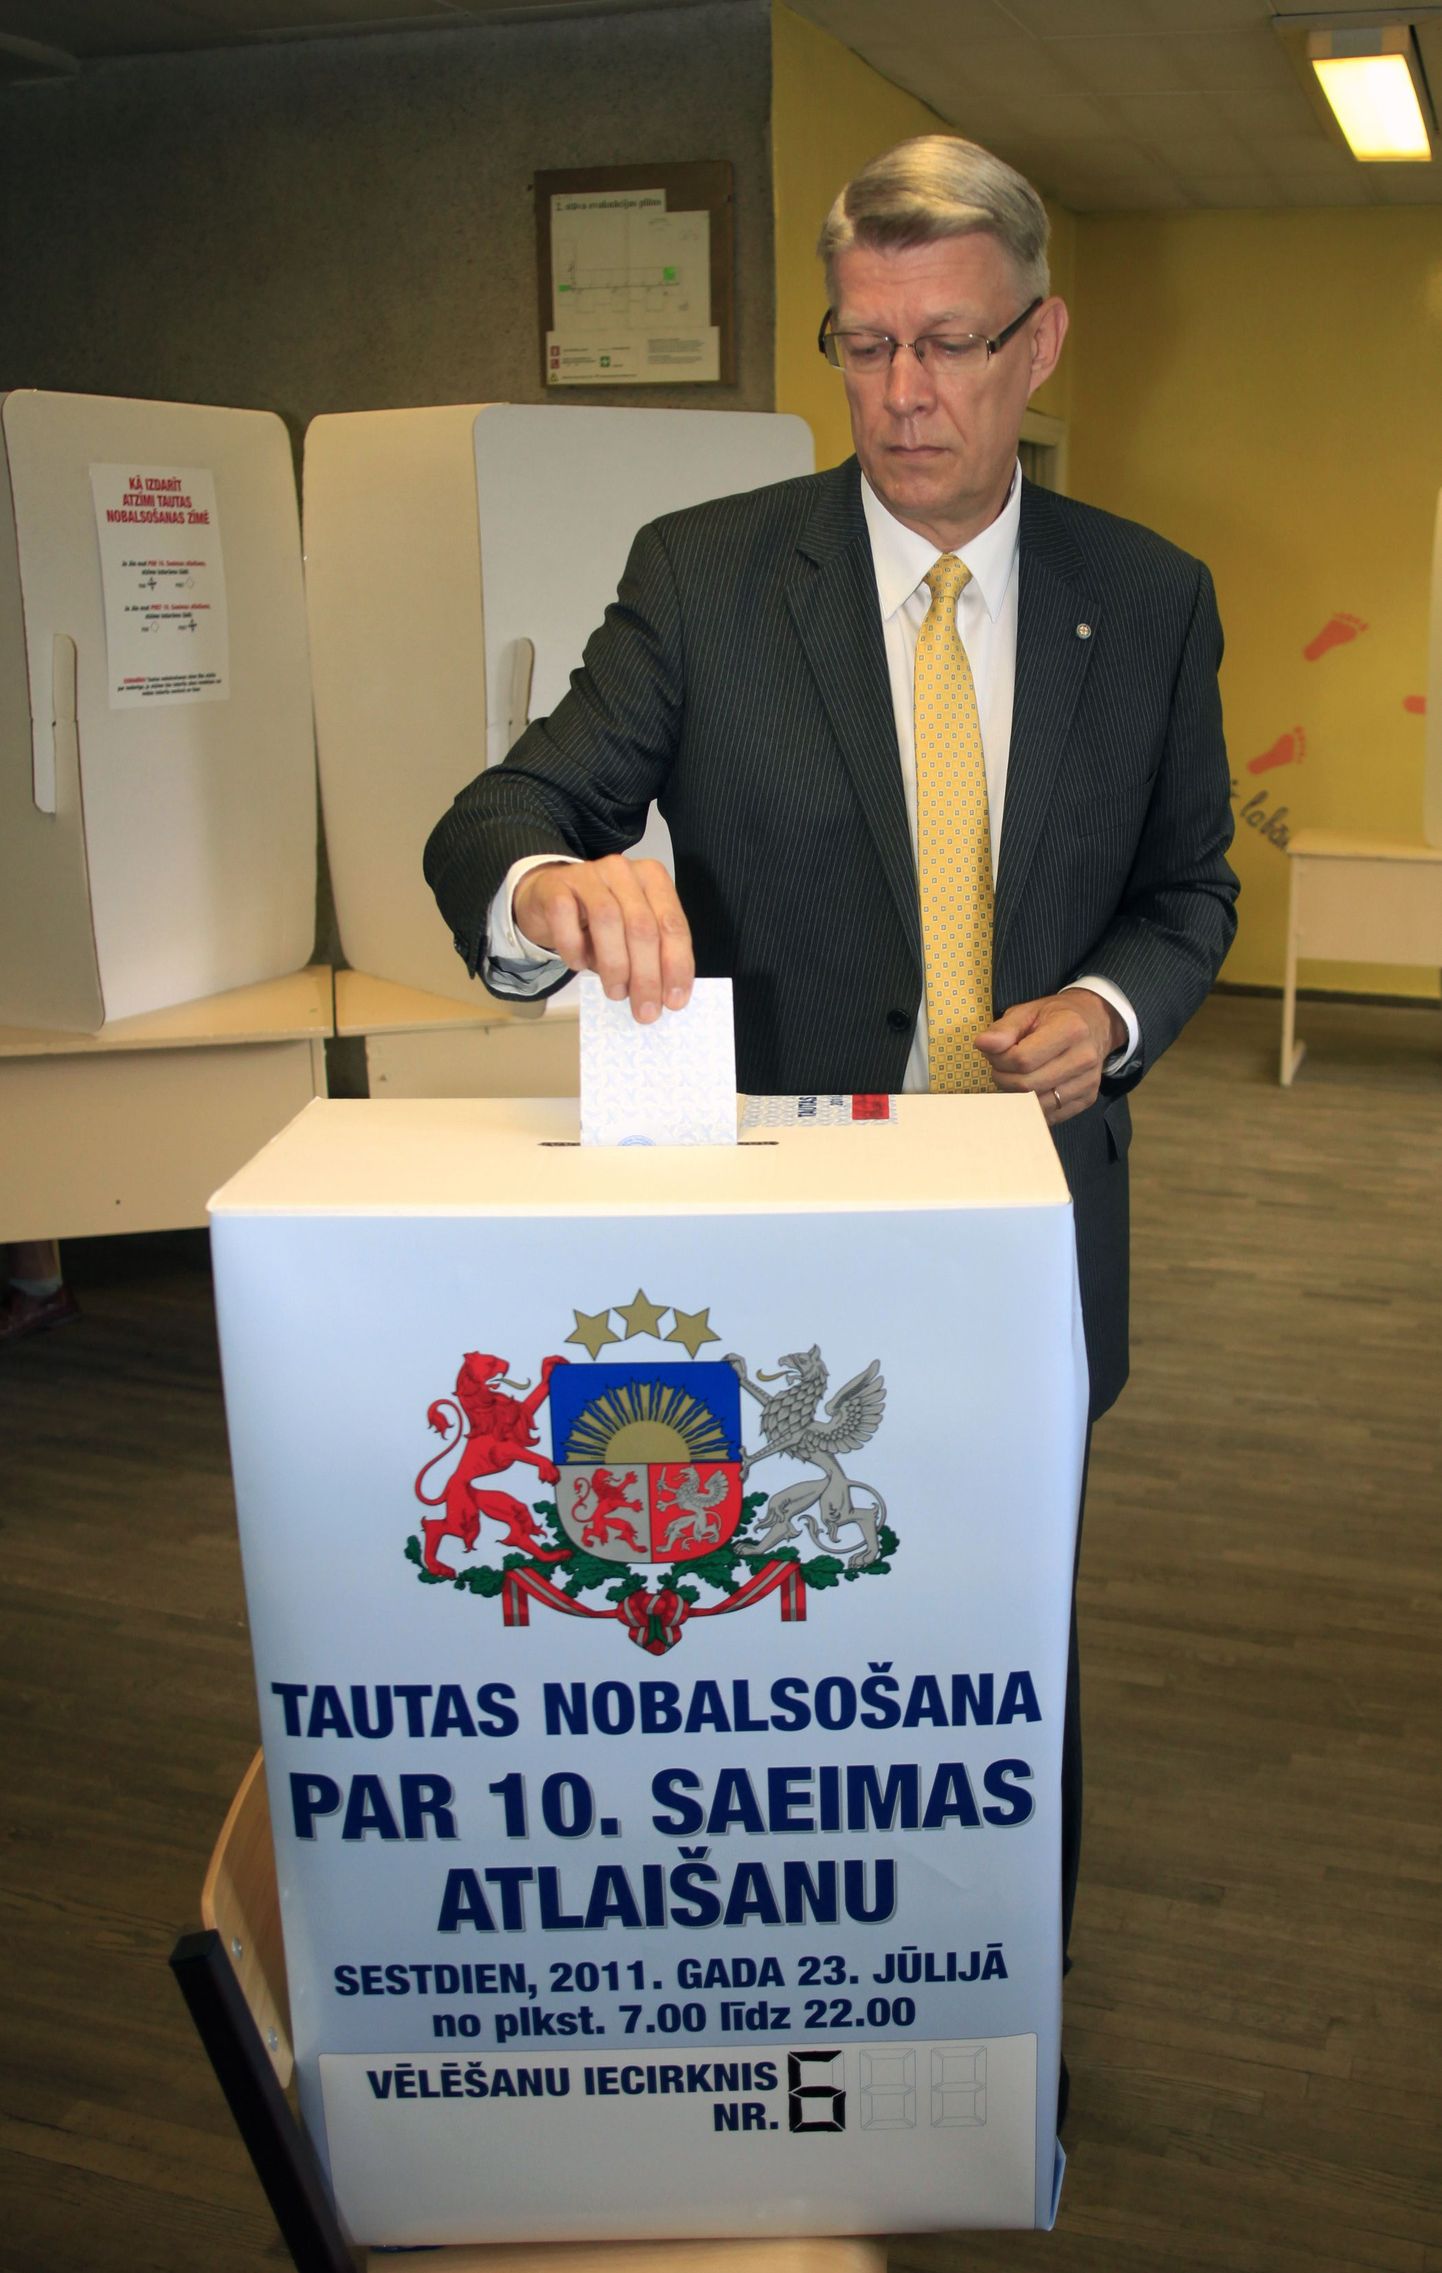 Läti ekspresident Valdis Zatlers hääletamas referendumil seimi laialisaatmise üle 23. juulil 2011. Seimi laialisaatmise algatas oma ametiaja lõpus Zatlers ise.